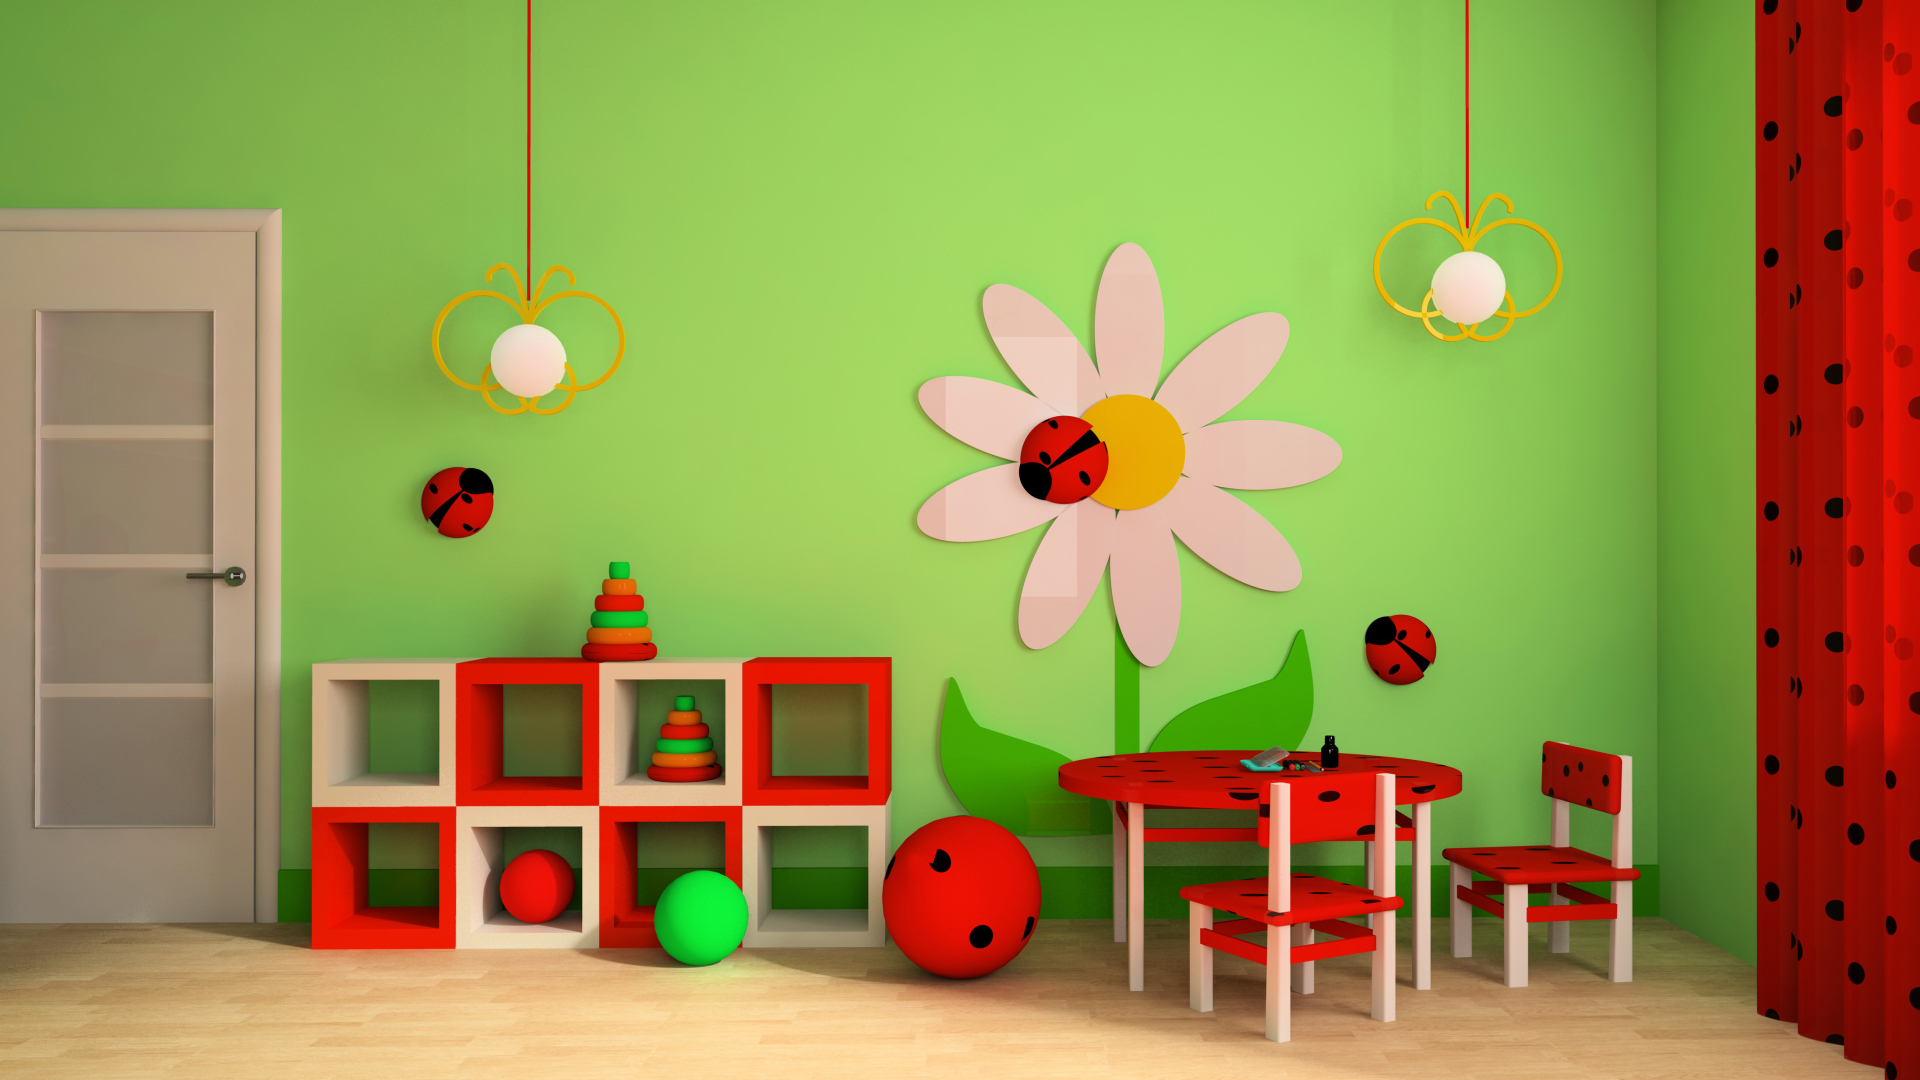 Яркая детская комната с красной мебелью и зелеными стенами